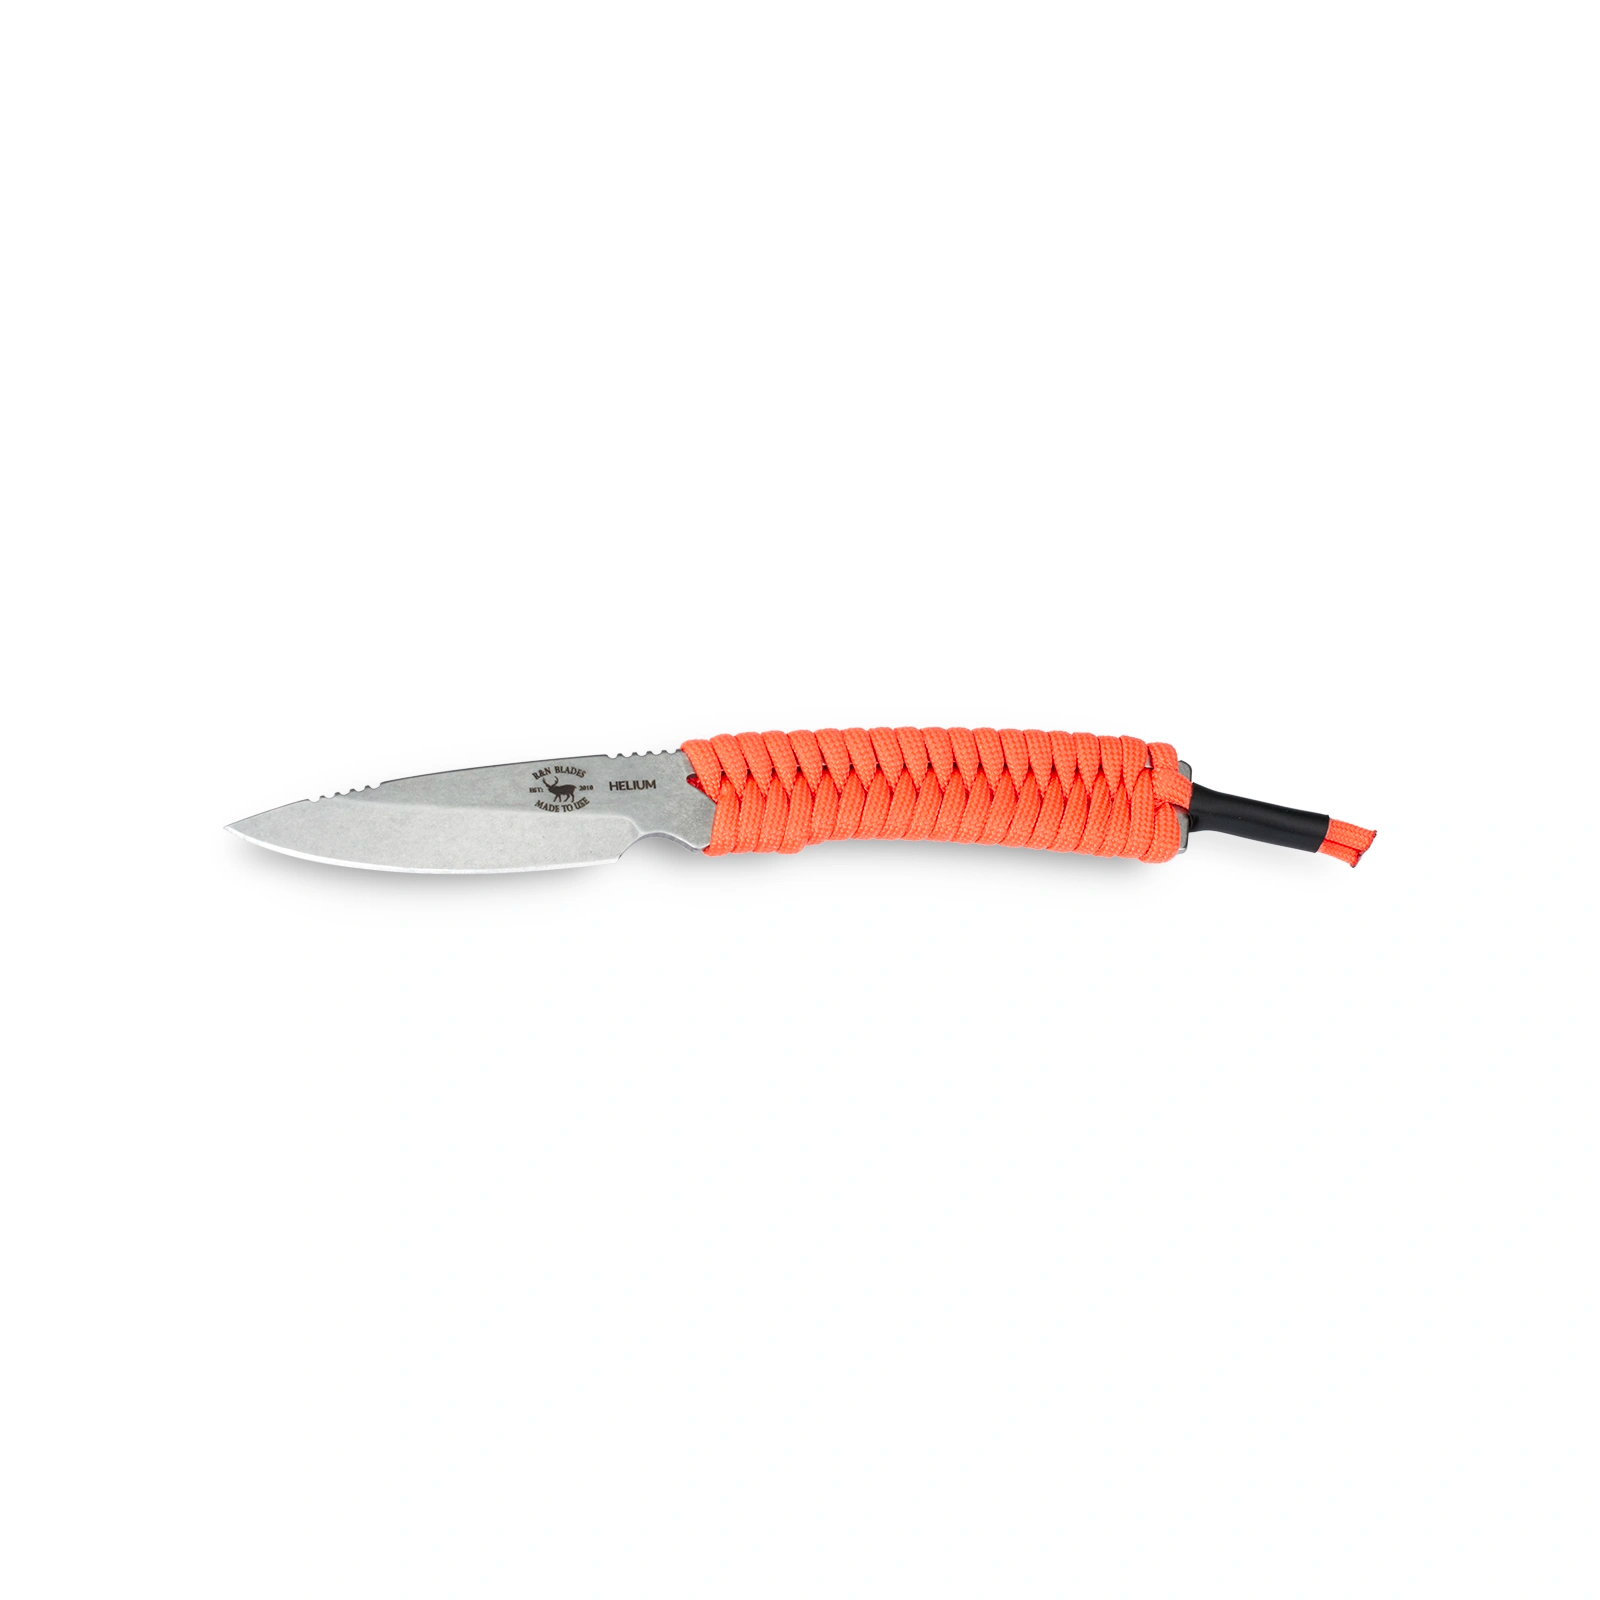 r and n blades helium knife orange